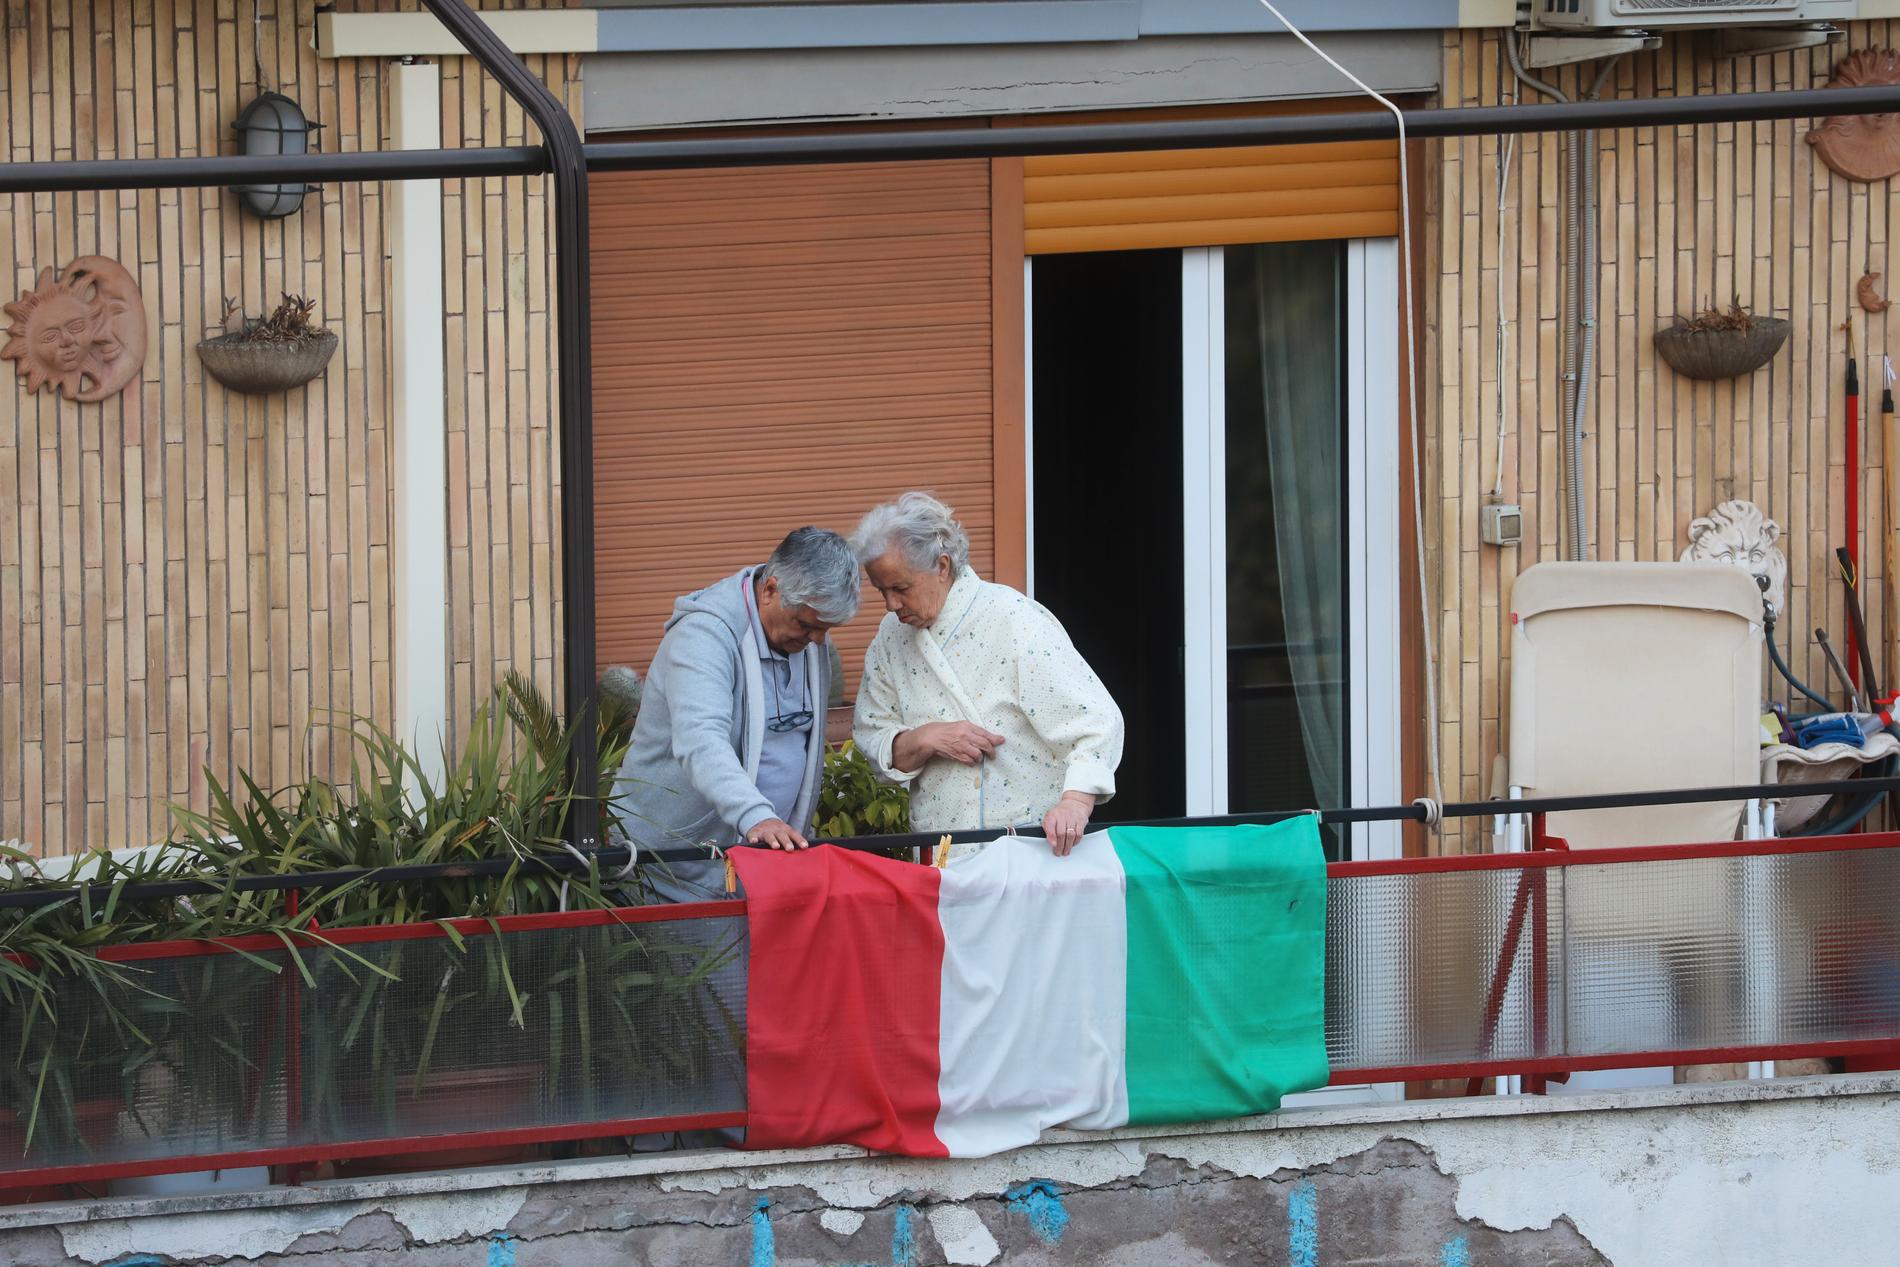 ROM, ITALIEN I coronavirusets tid spenderar fler och fler italienare sin tid isolerade hemma i lägenheten, gärna på balkongen. 